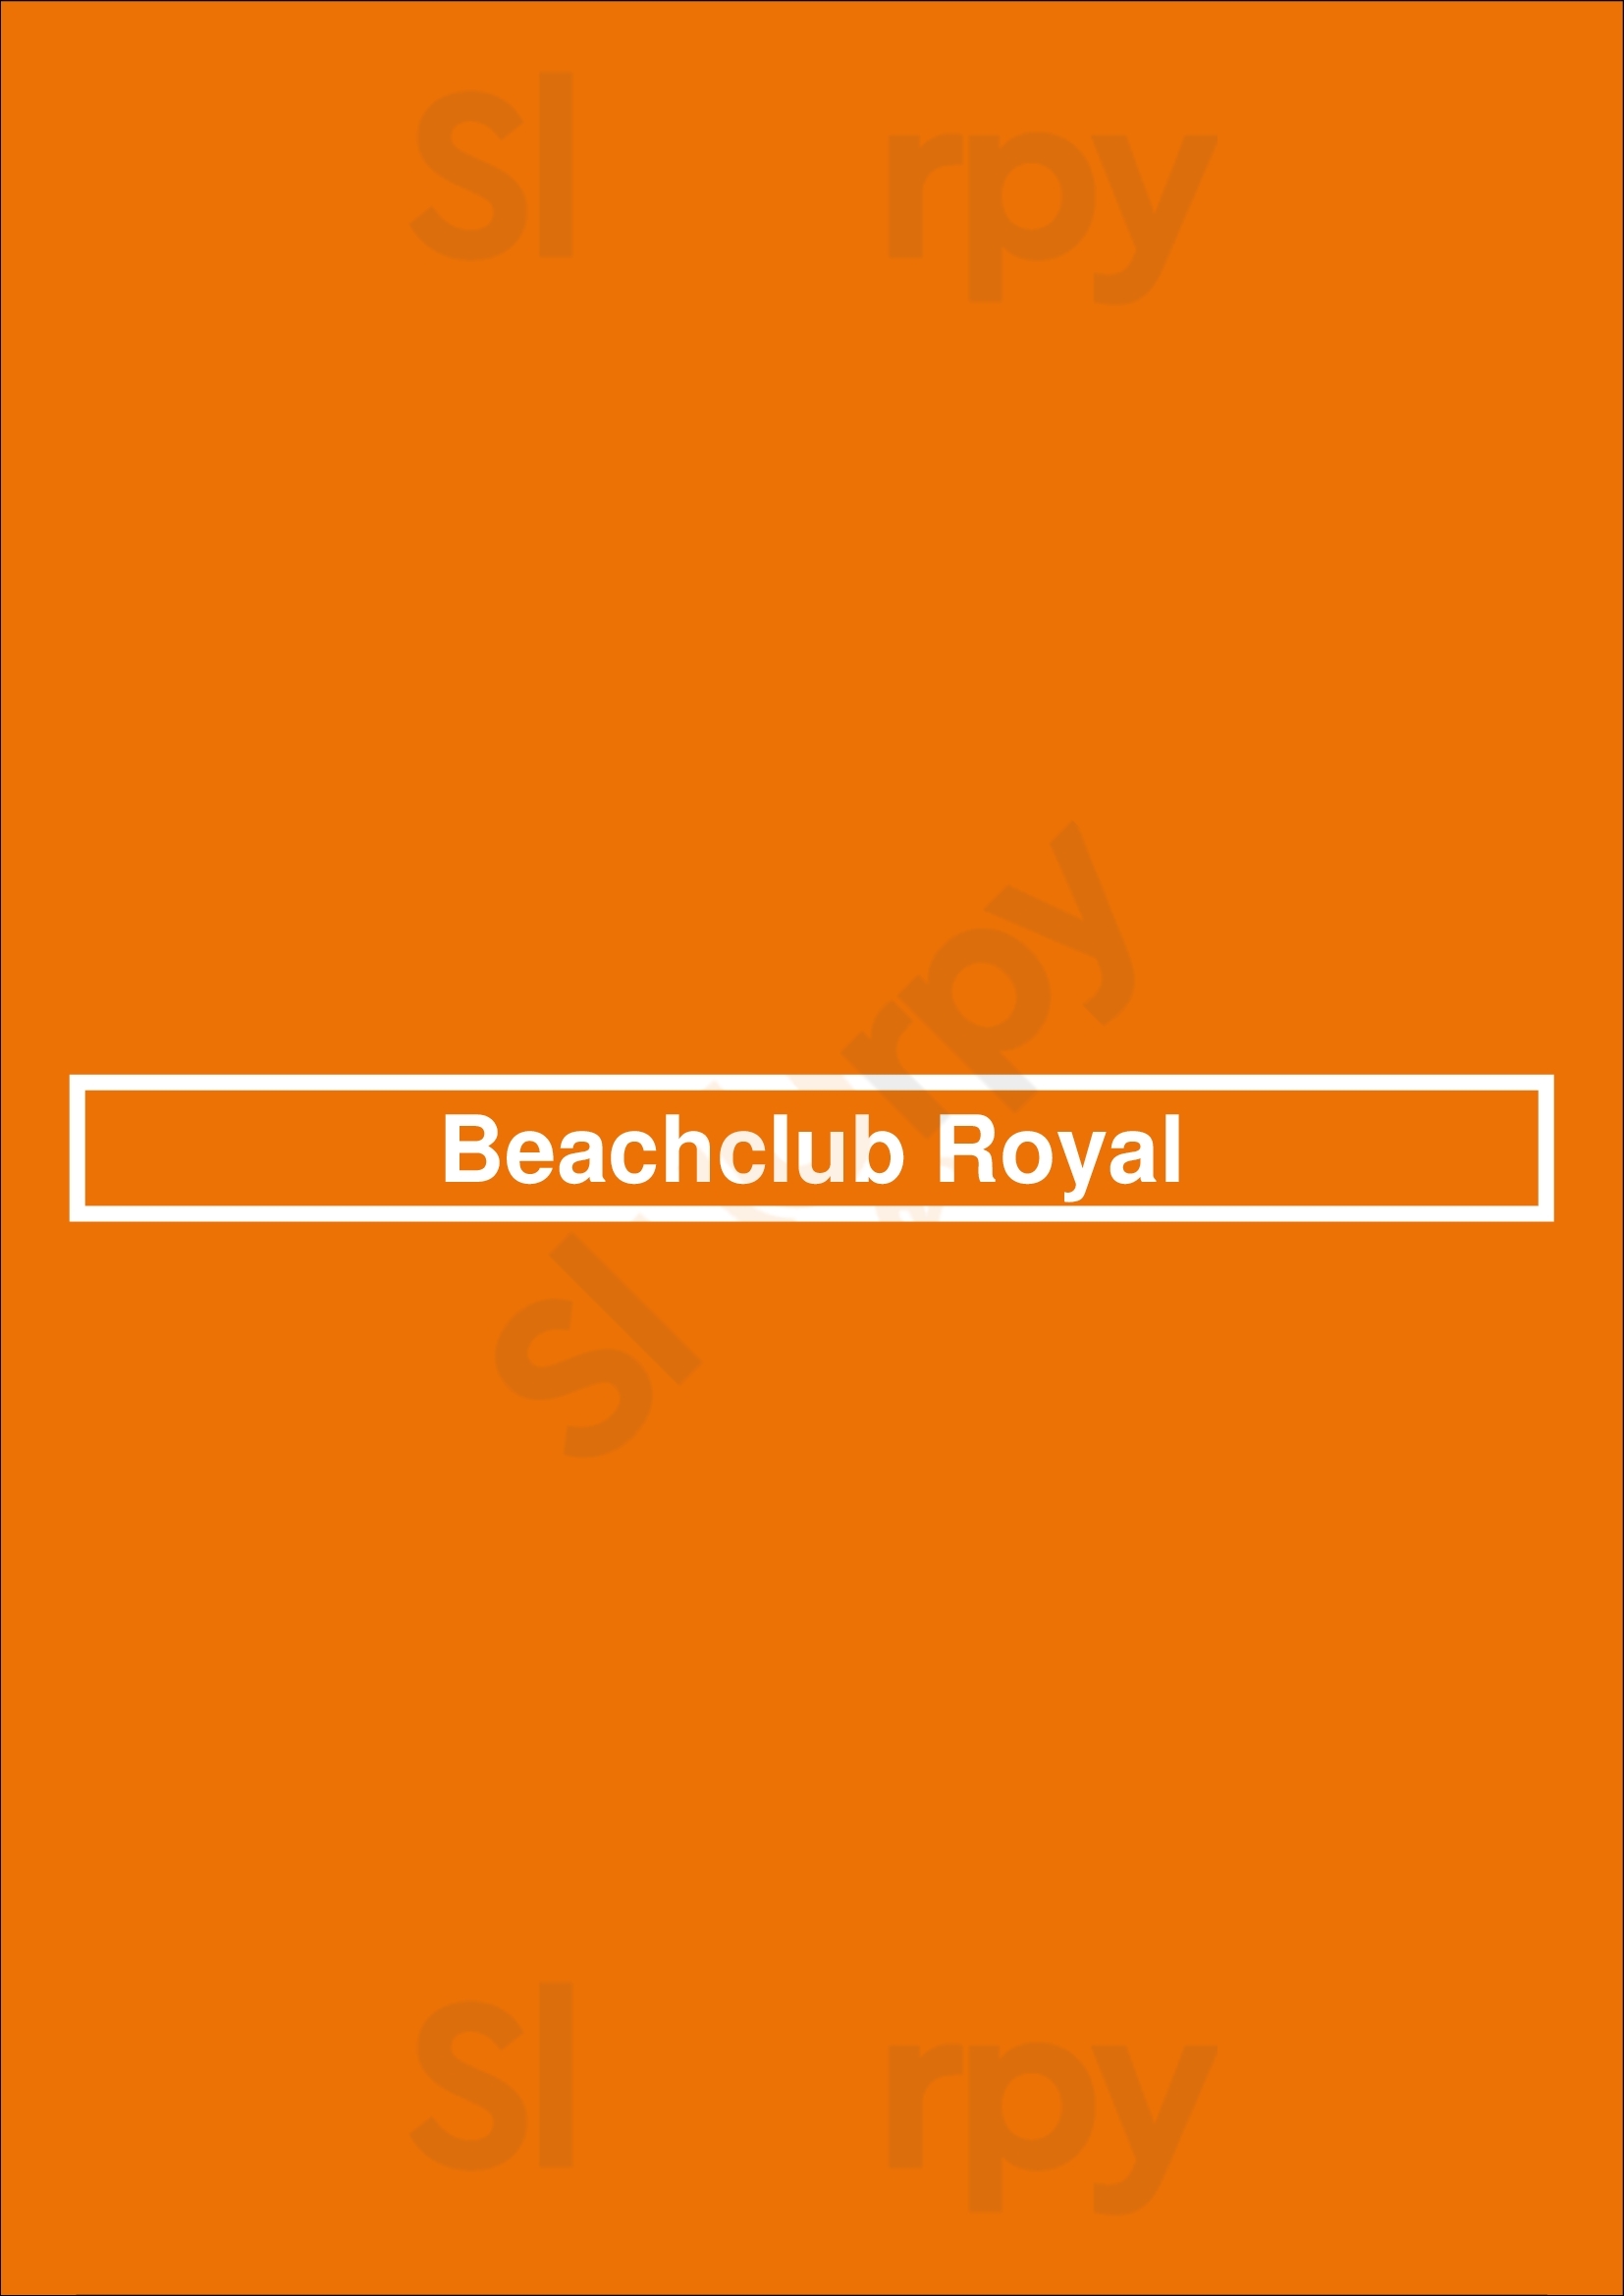 Beachclub Royal Hoek van Holland Menu - 1